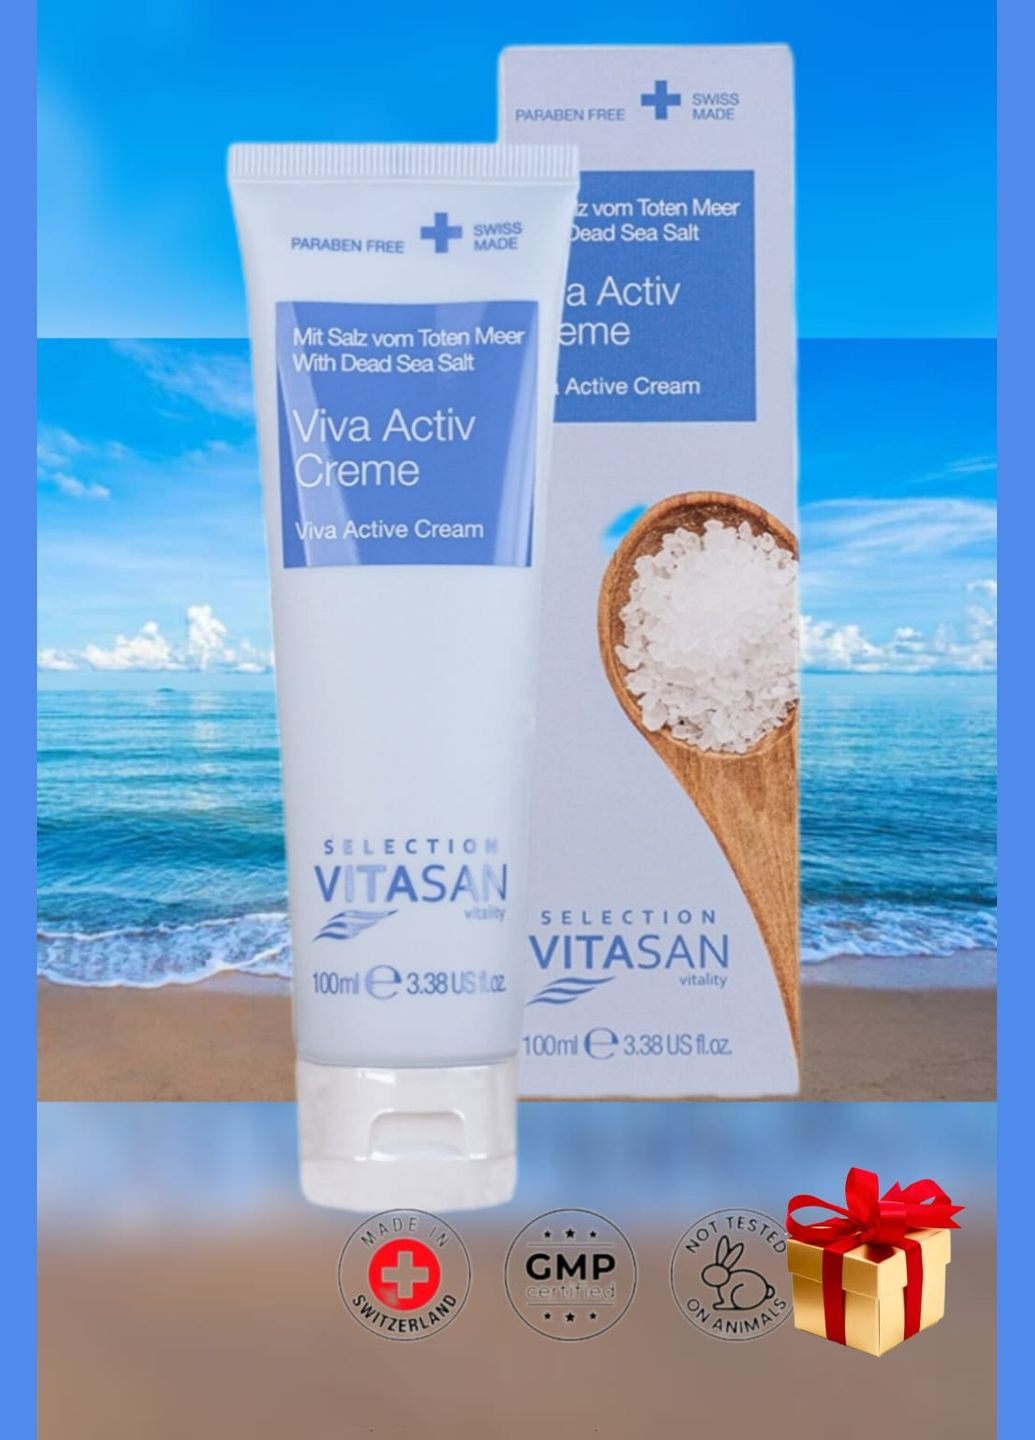 Крем Вива Актив Viva Activ Creme (соли моря) 100 мл, Швейцария Vivasan (293083502)